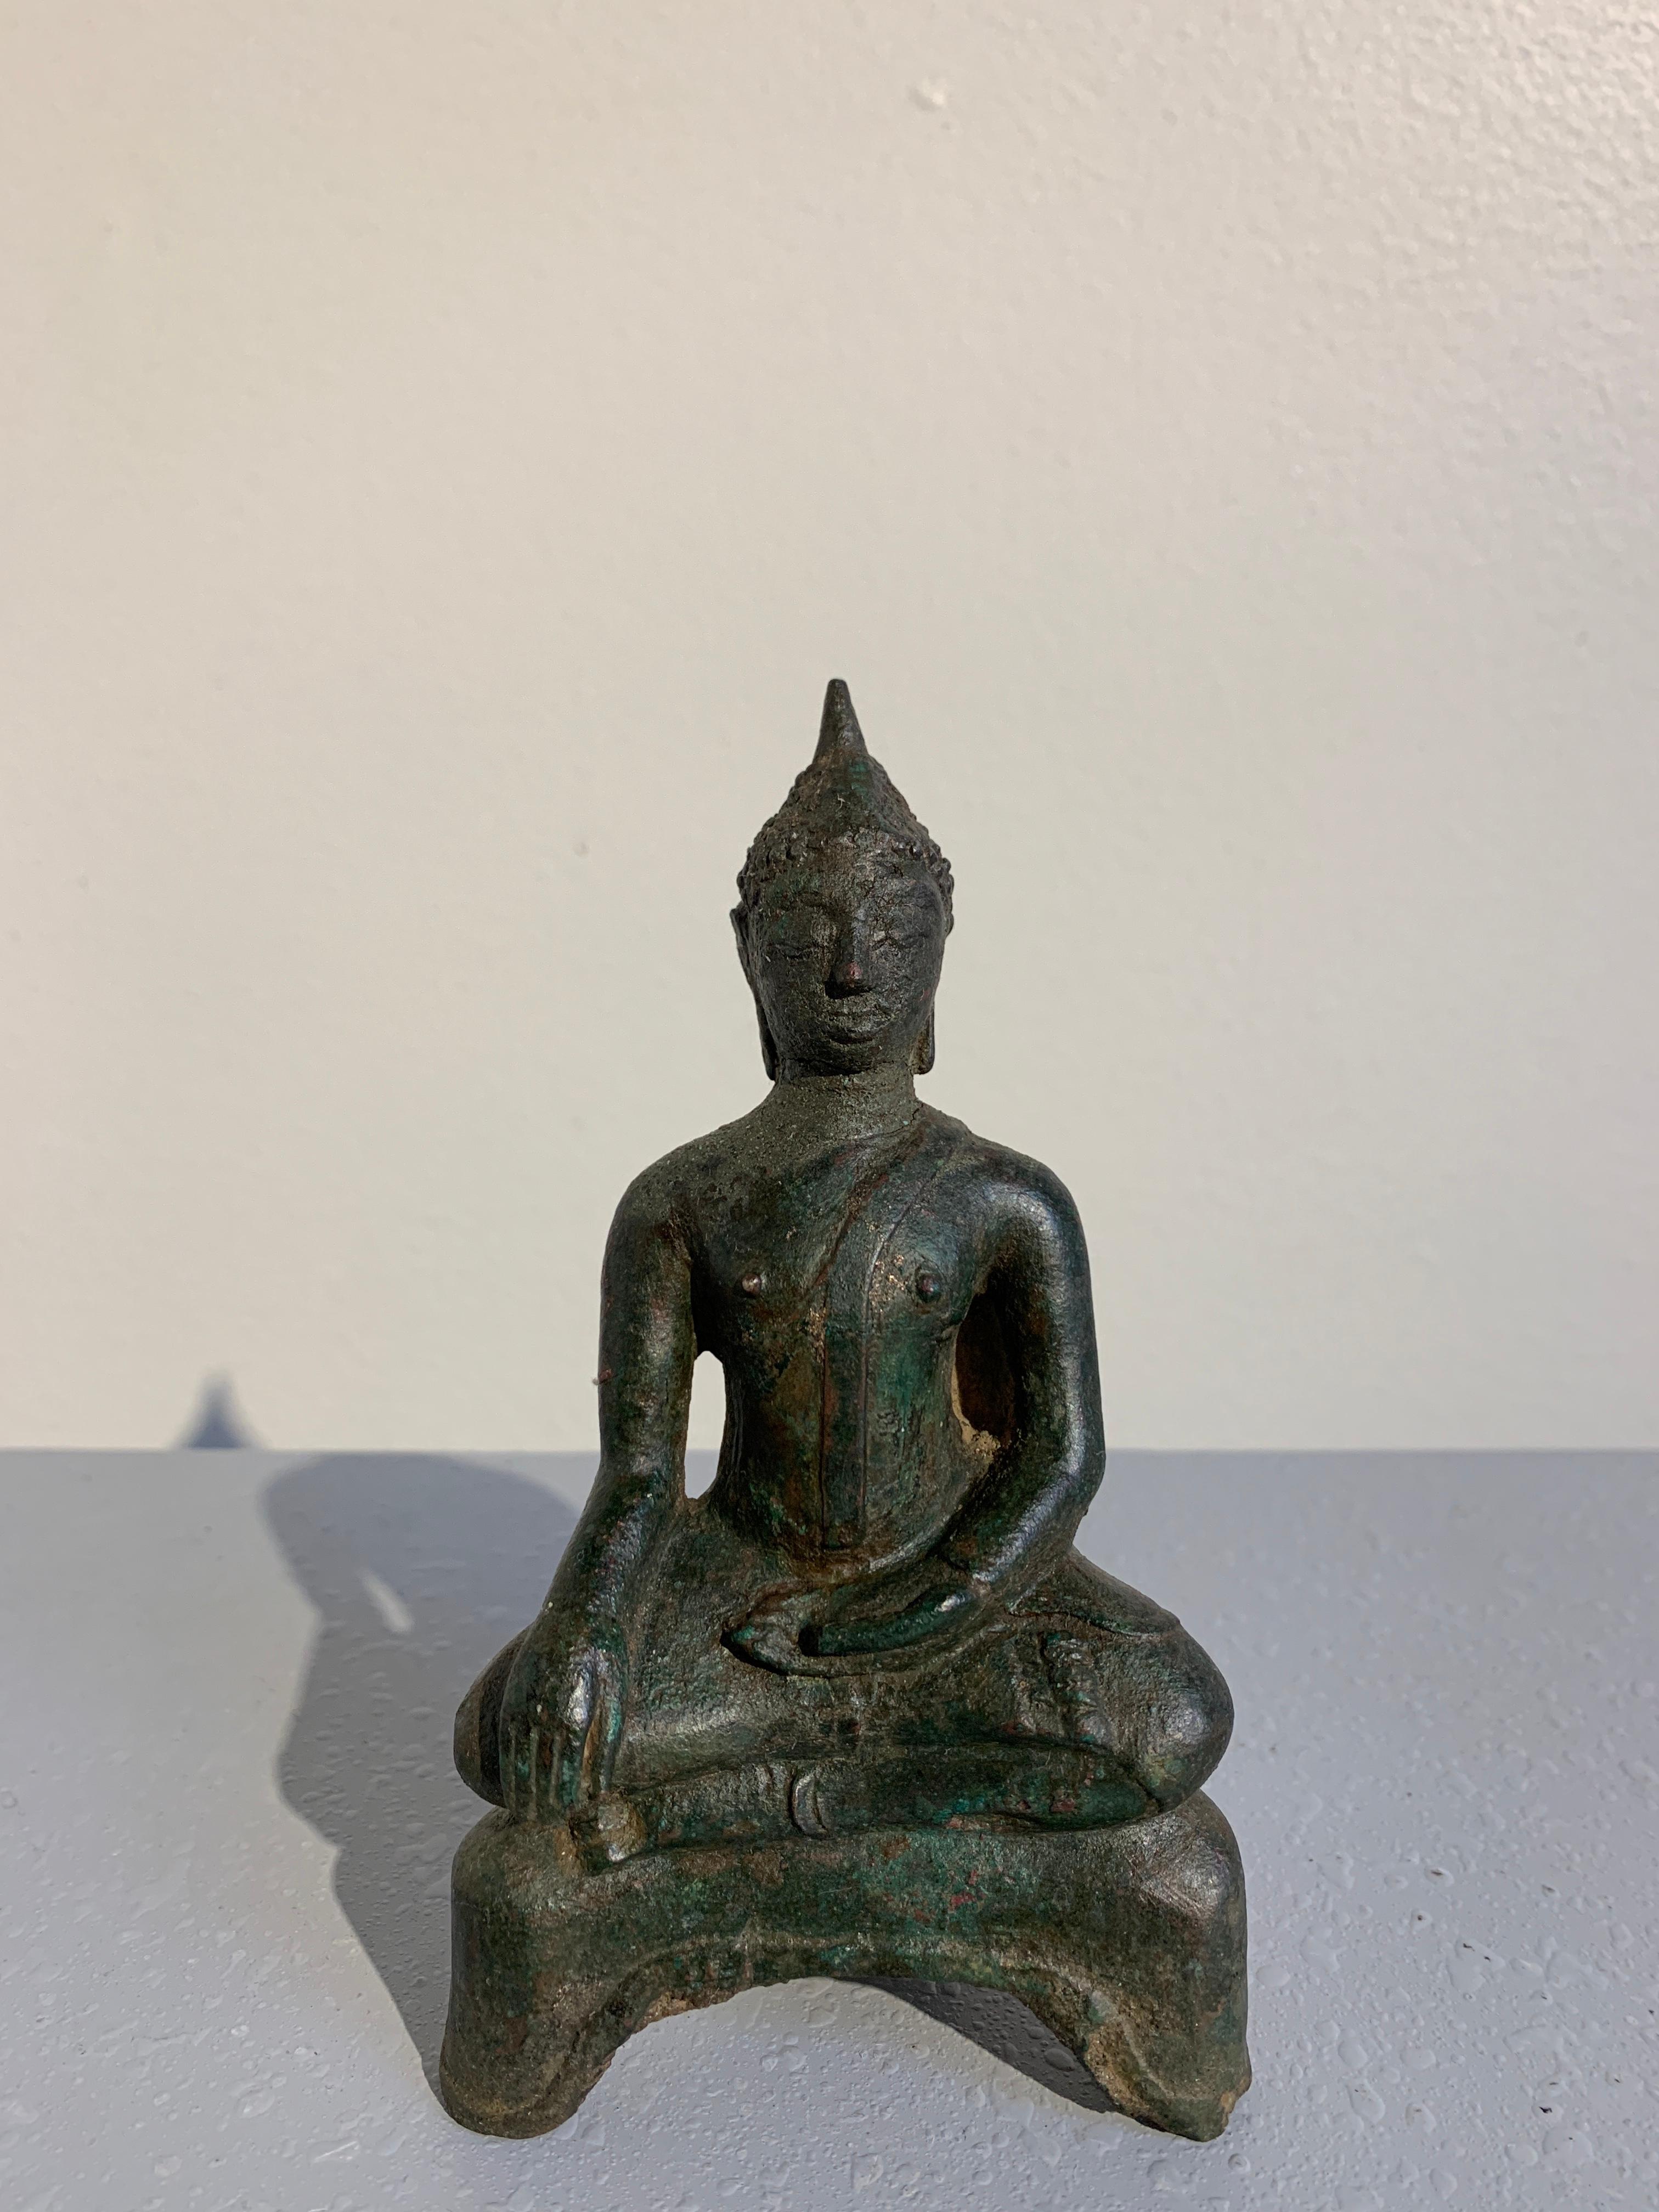 Eine kleine thailändische gegossene sitzende Bronzefigur des historischen Buddha Shakyamuni, Nordthailand, Ayutthaya-Zeit, 16.

Diese Skulptur hält den Moment fest, bevor der als Siddartha Guatama bekannte Mann die Erleuchtung erlangt und zum